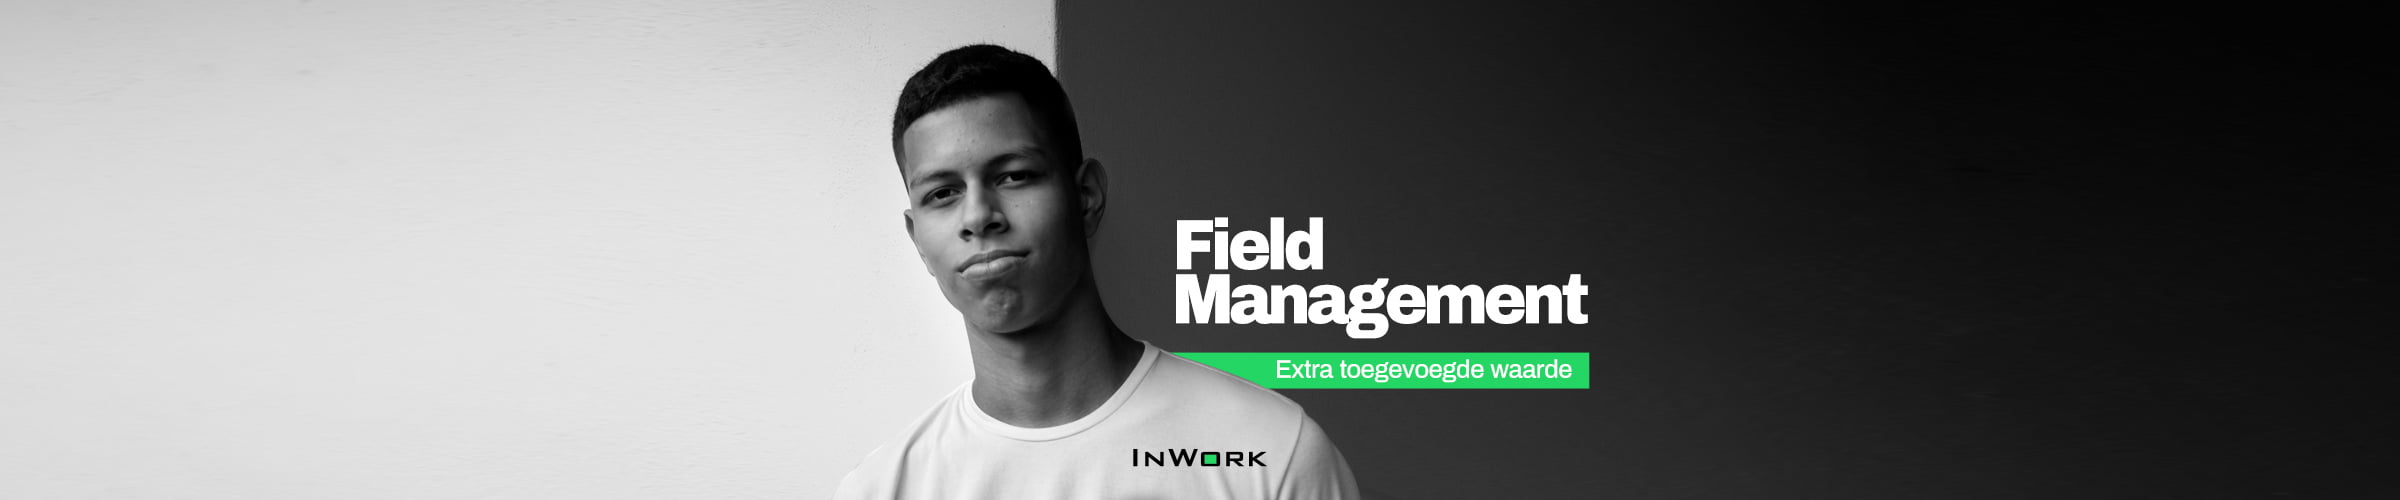 Field Management: extra toegevoegde waarde